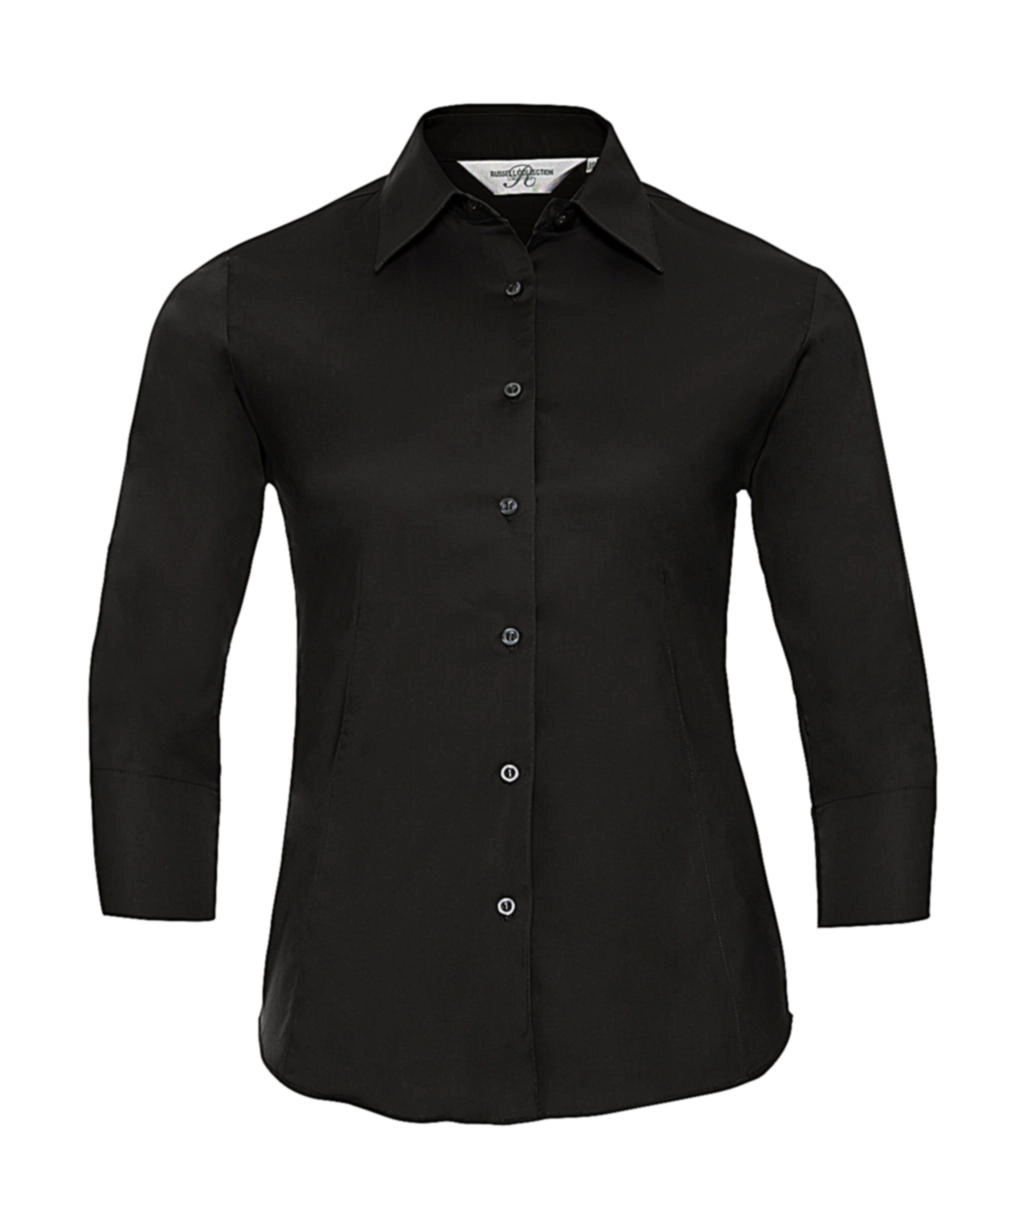 Ladies` 3/4 Sleeve Easy Care Fitted Shirt zum Besticken und Bedrucken in der Farbe Black mit Ihren Logo, Schriftzug oder Motiv.